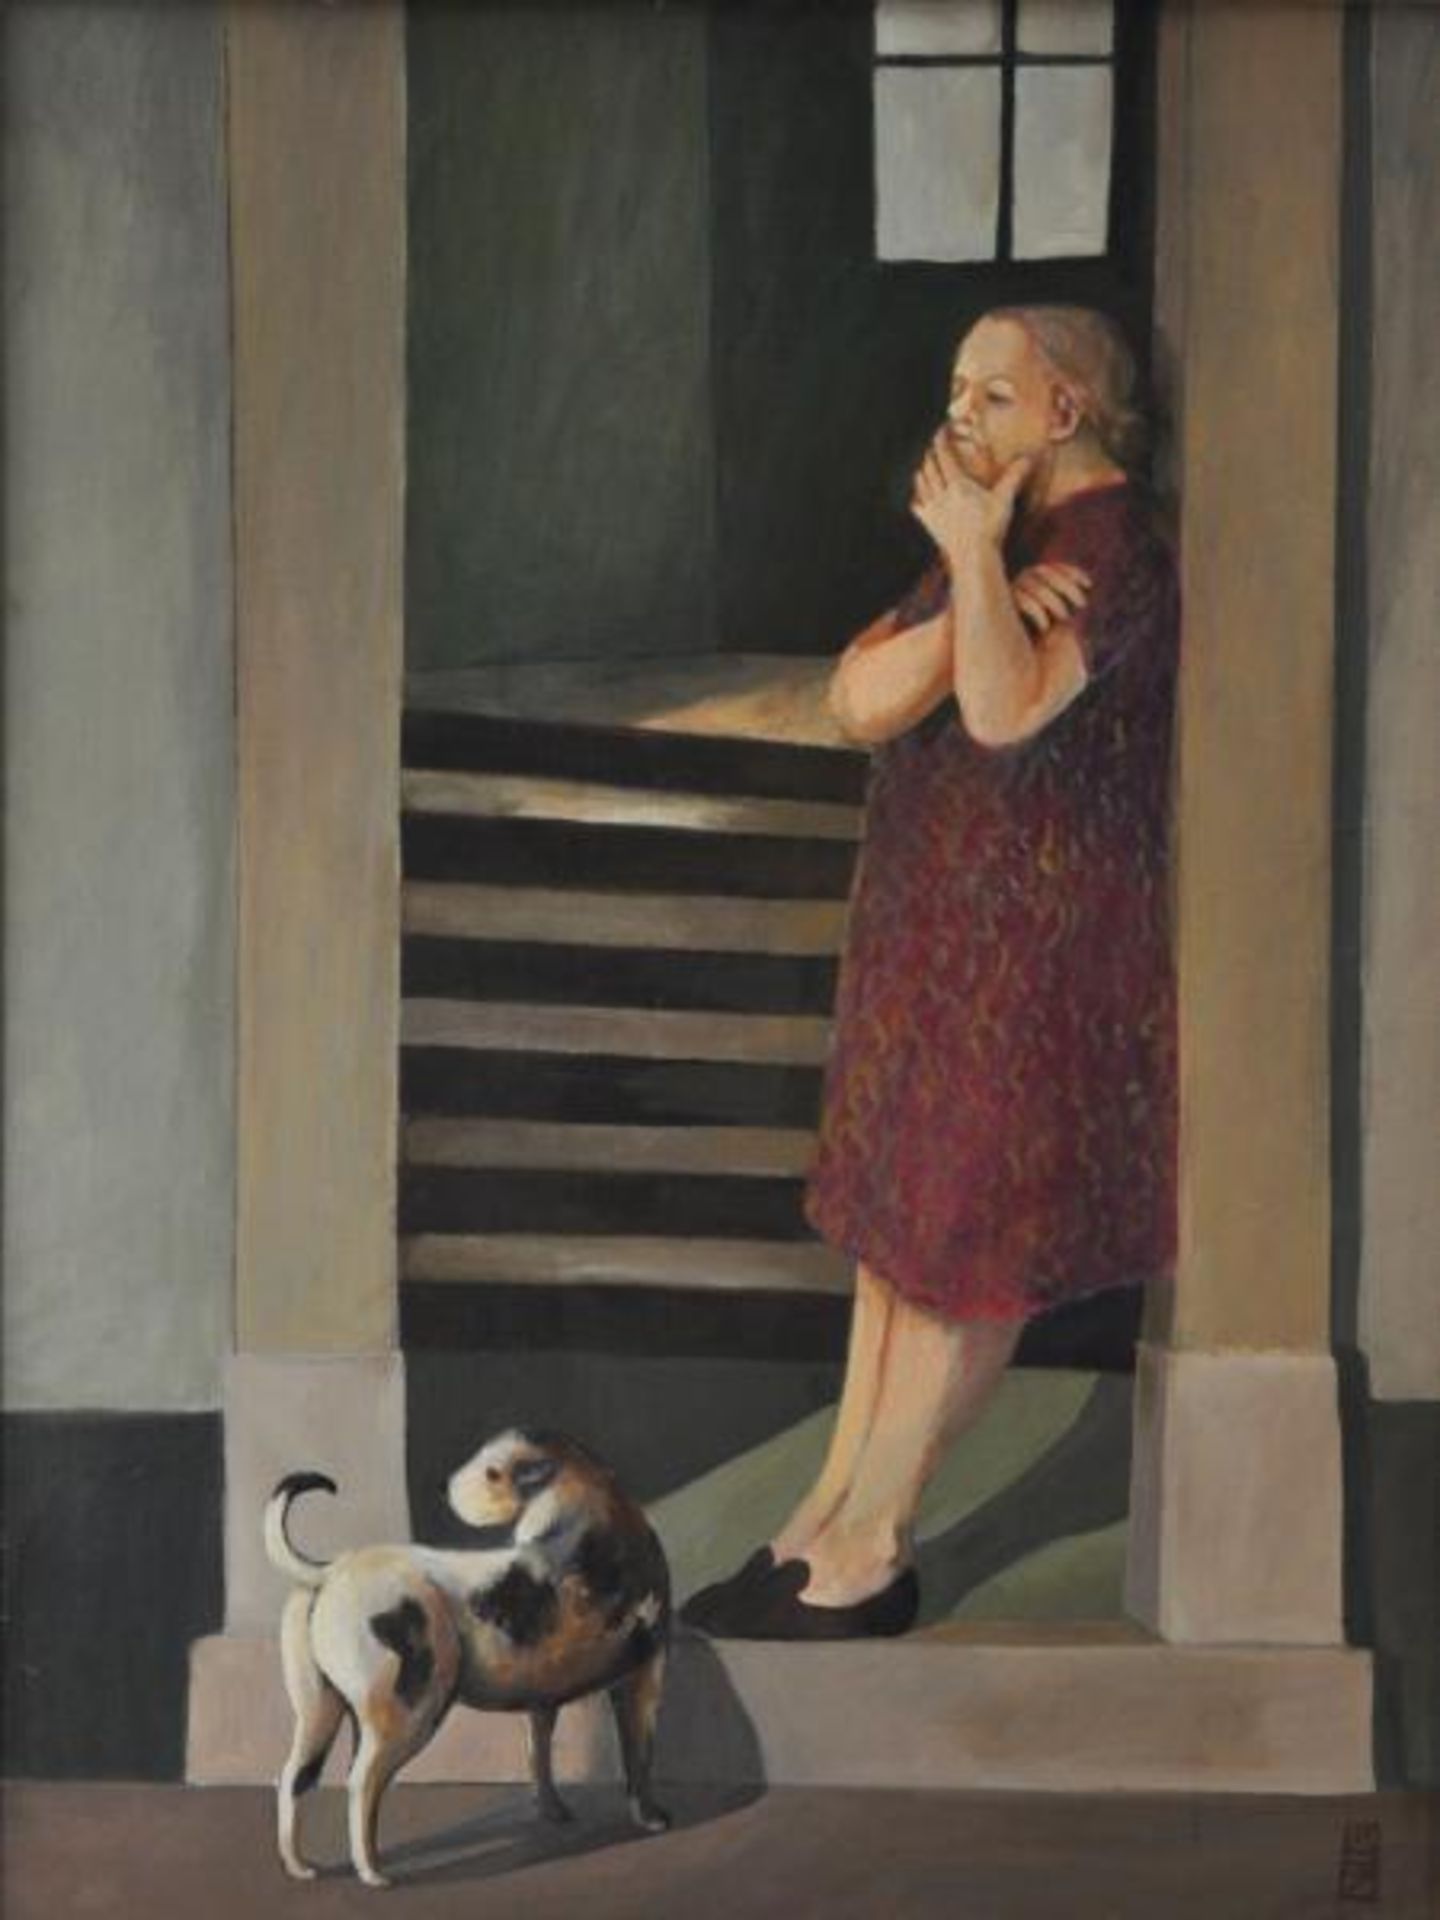 BLOMEIER-ZILLICH Ulrike (1944 Elstra) "Türsteher", Frau an offener Haustüre stehend mit kritischem